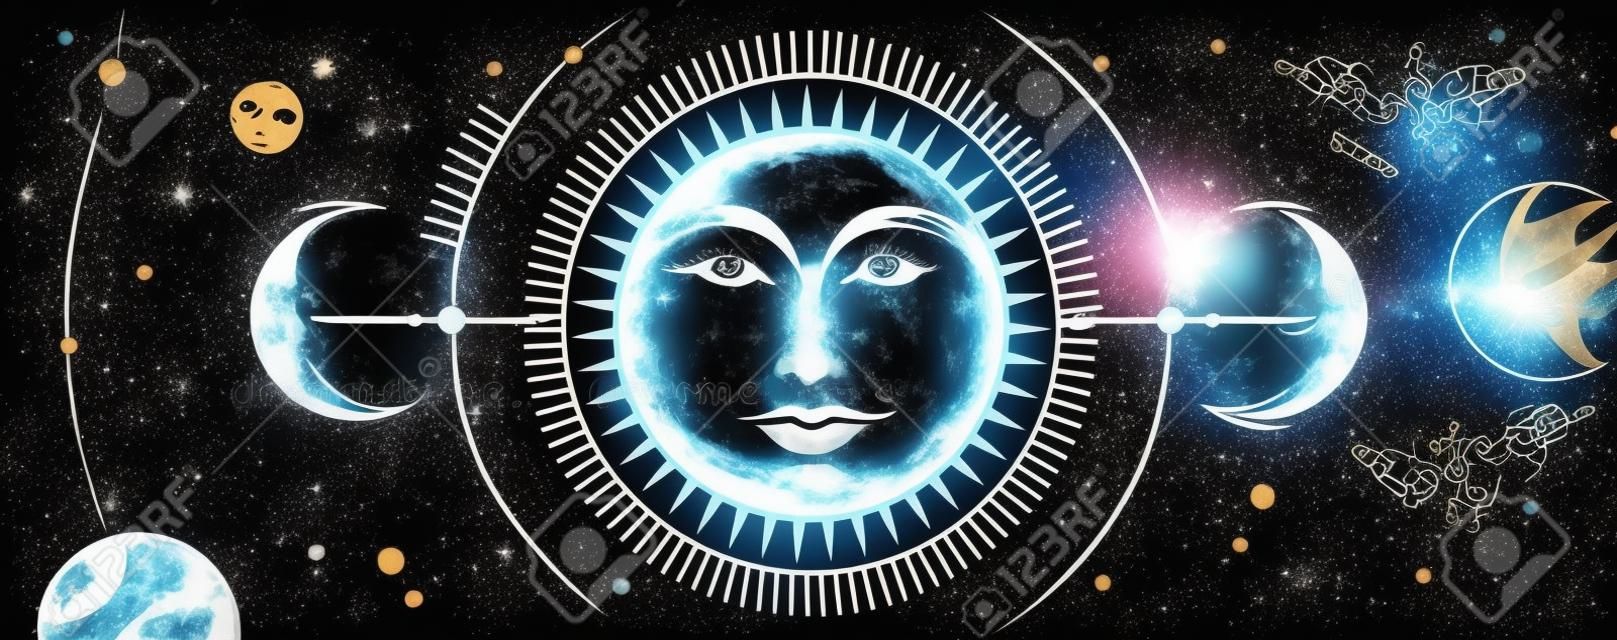 Moderne magische Hexereikarte mit Astrologie-Sonnen- und Mondzeichen mit menschlichem Gesicht auf Weltraumhintergrund. Tag und Nacht. Realistische Handzeichnungsvektorillustration